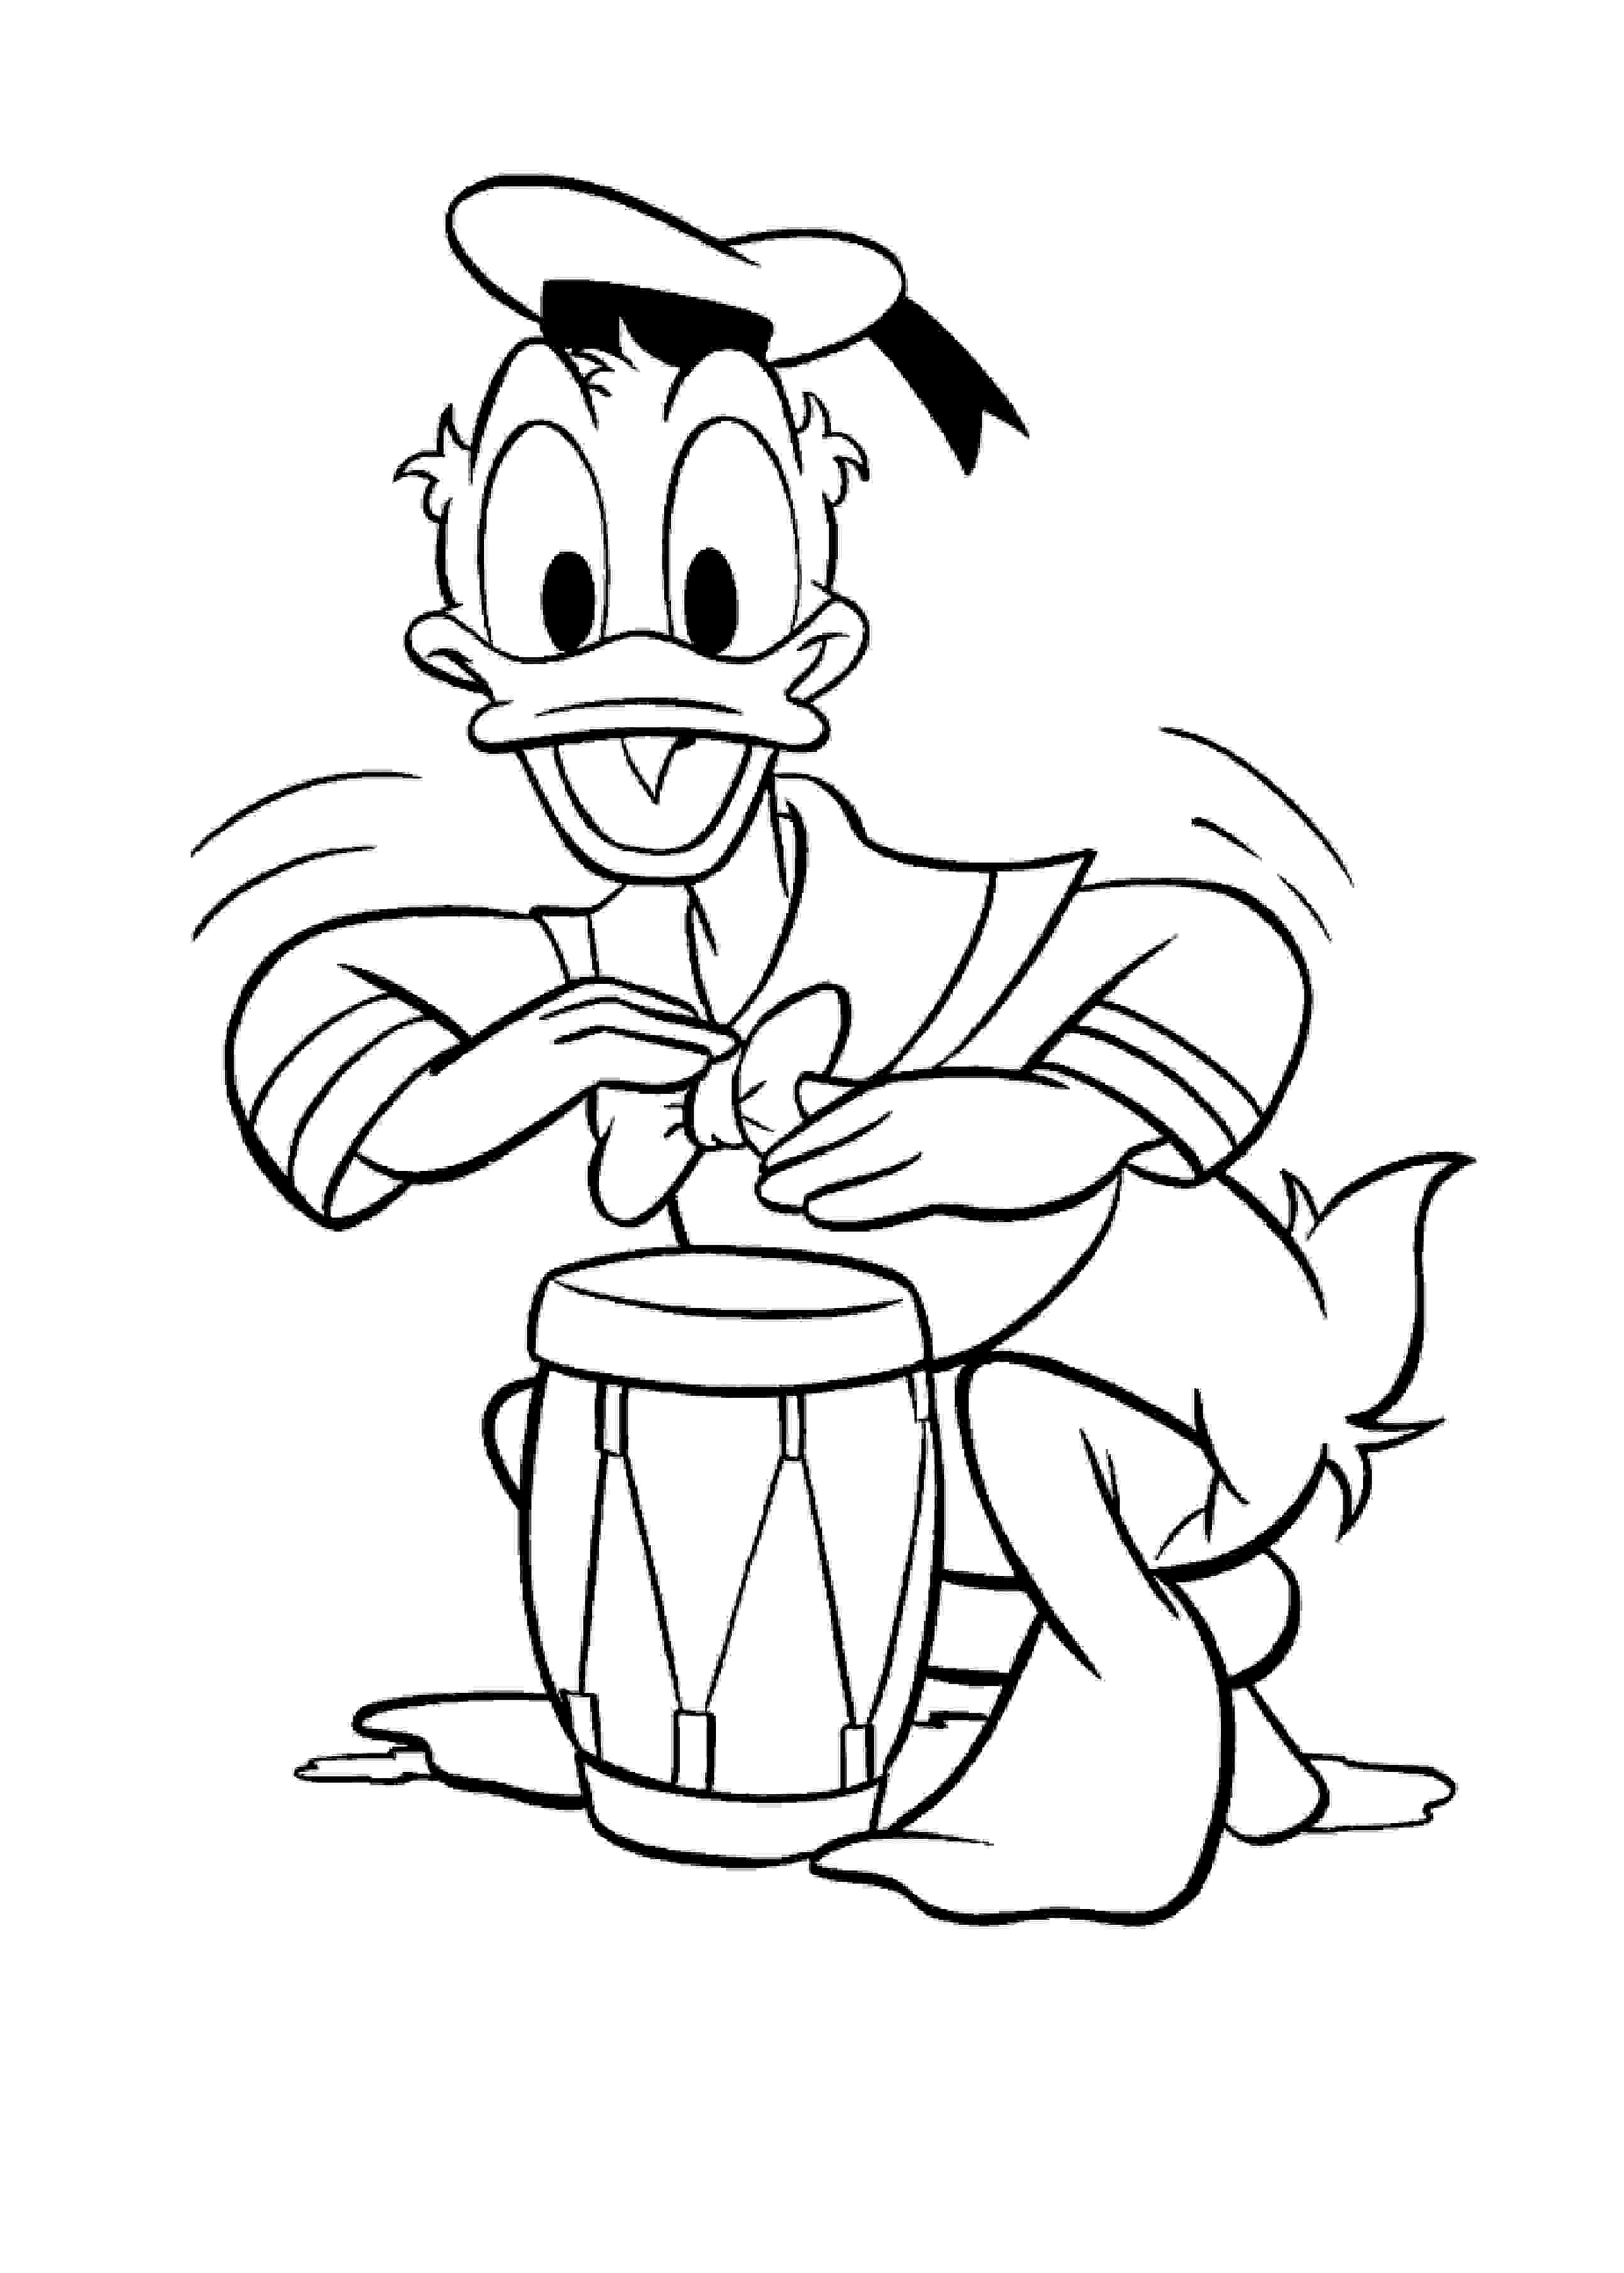 Donald (Disney) toca o tambor